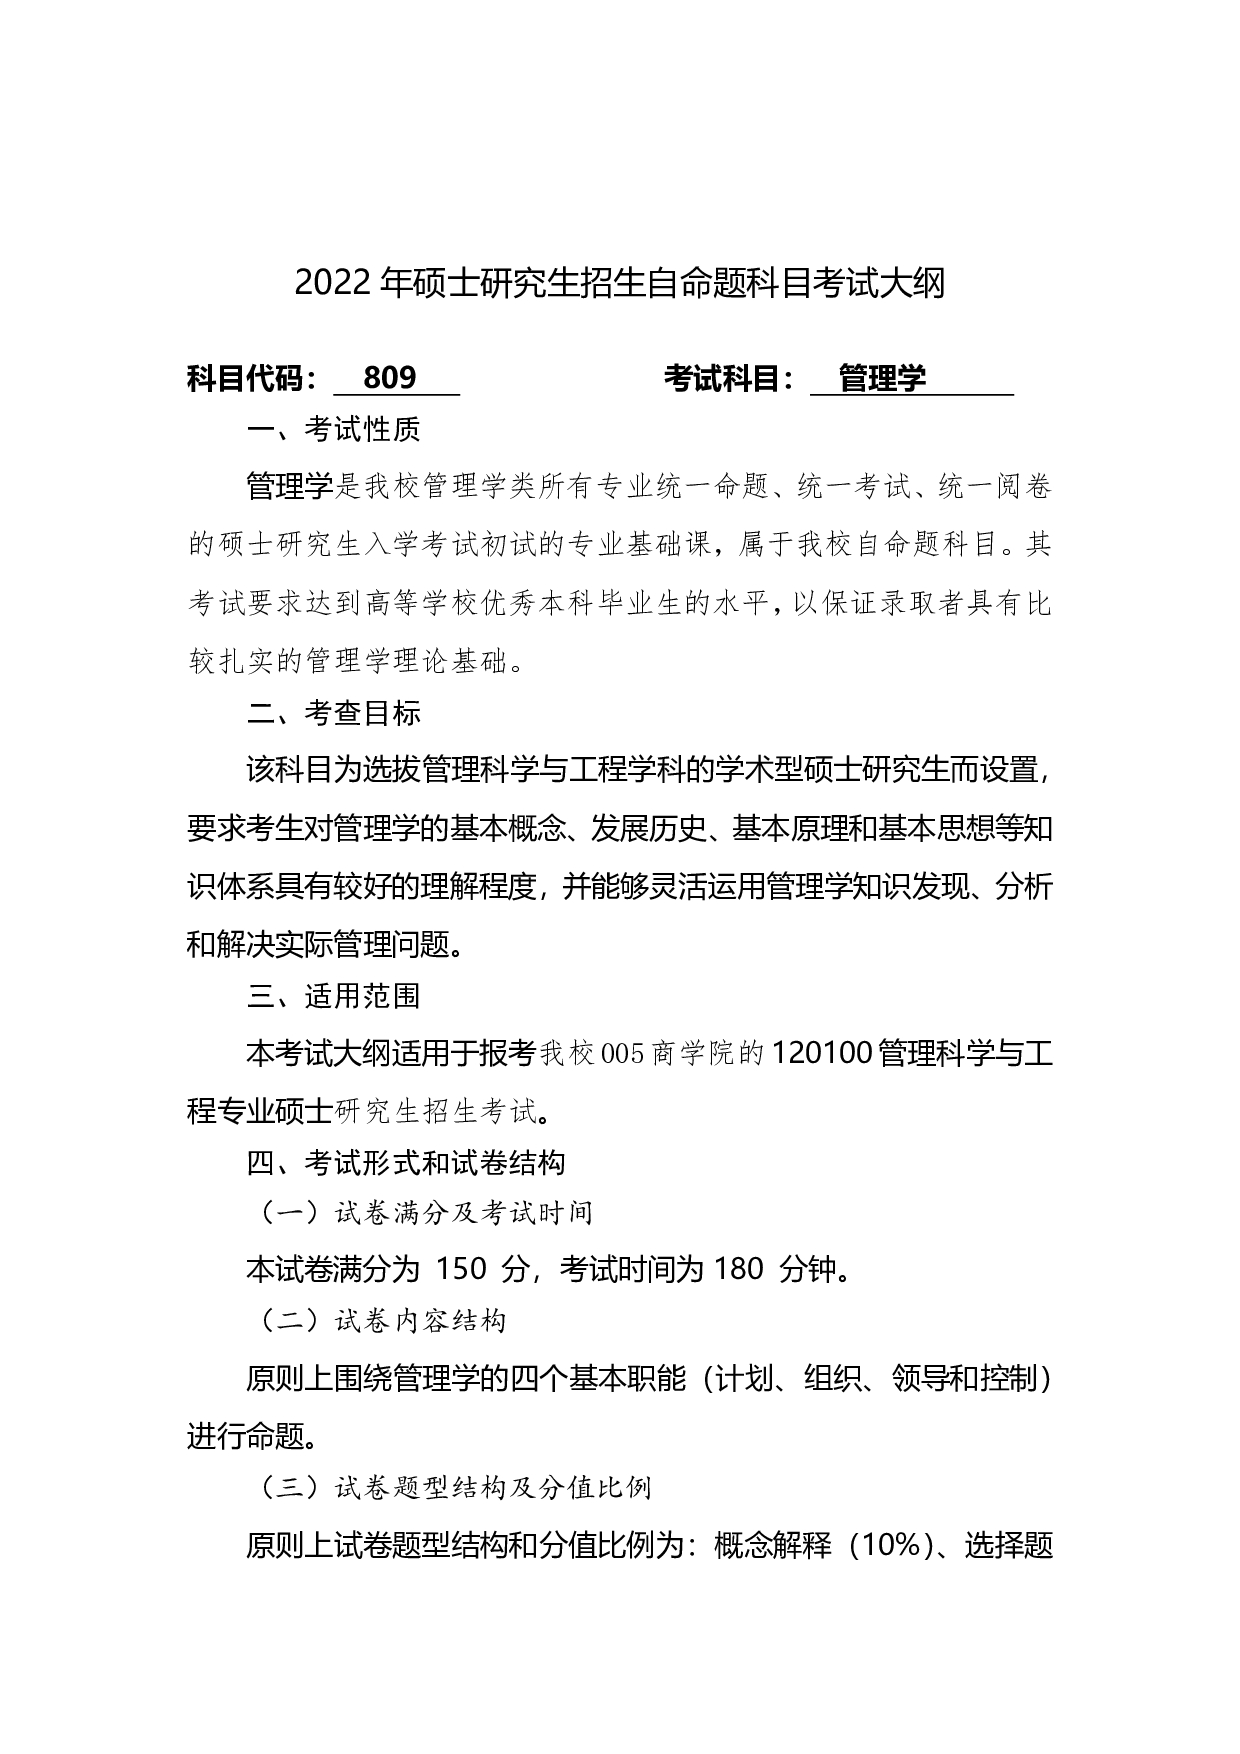 2022考研大纲：桂林电子科技大学2022年考研 809管理学 考试大纲第1页